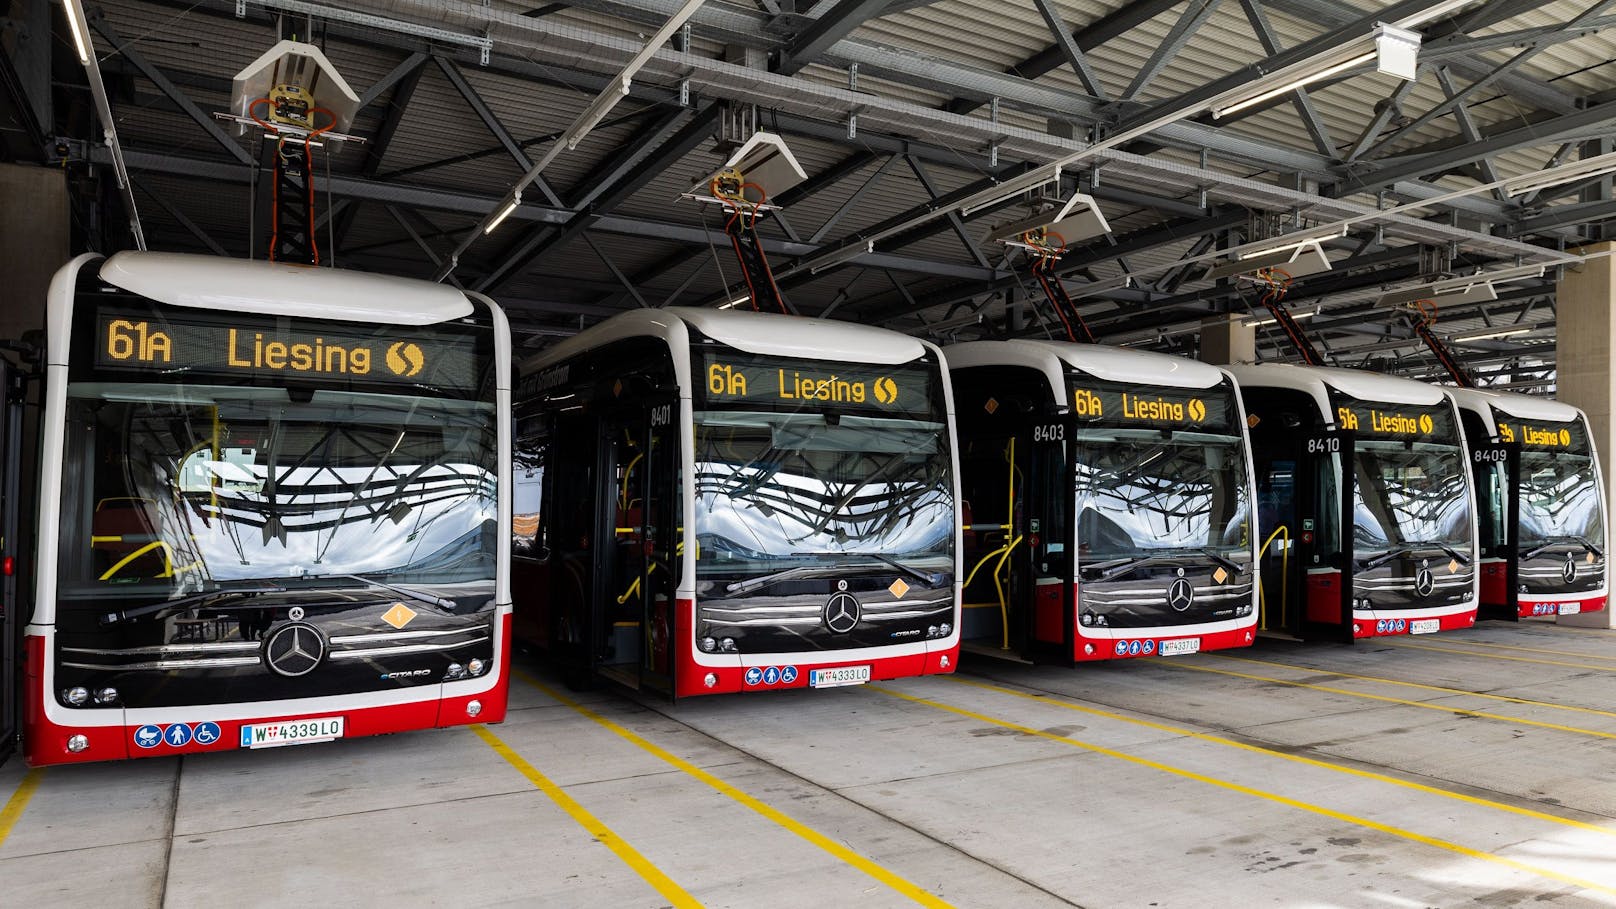 Ab 6. Mai sind die neuen E-Busse der Wiener Linien auf vier weiteren Linien unterwegs: 61A, 61B, 64A, 64B